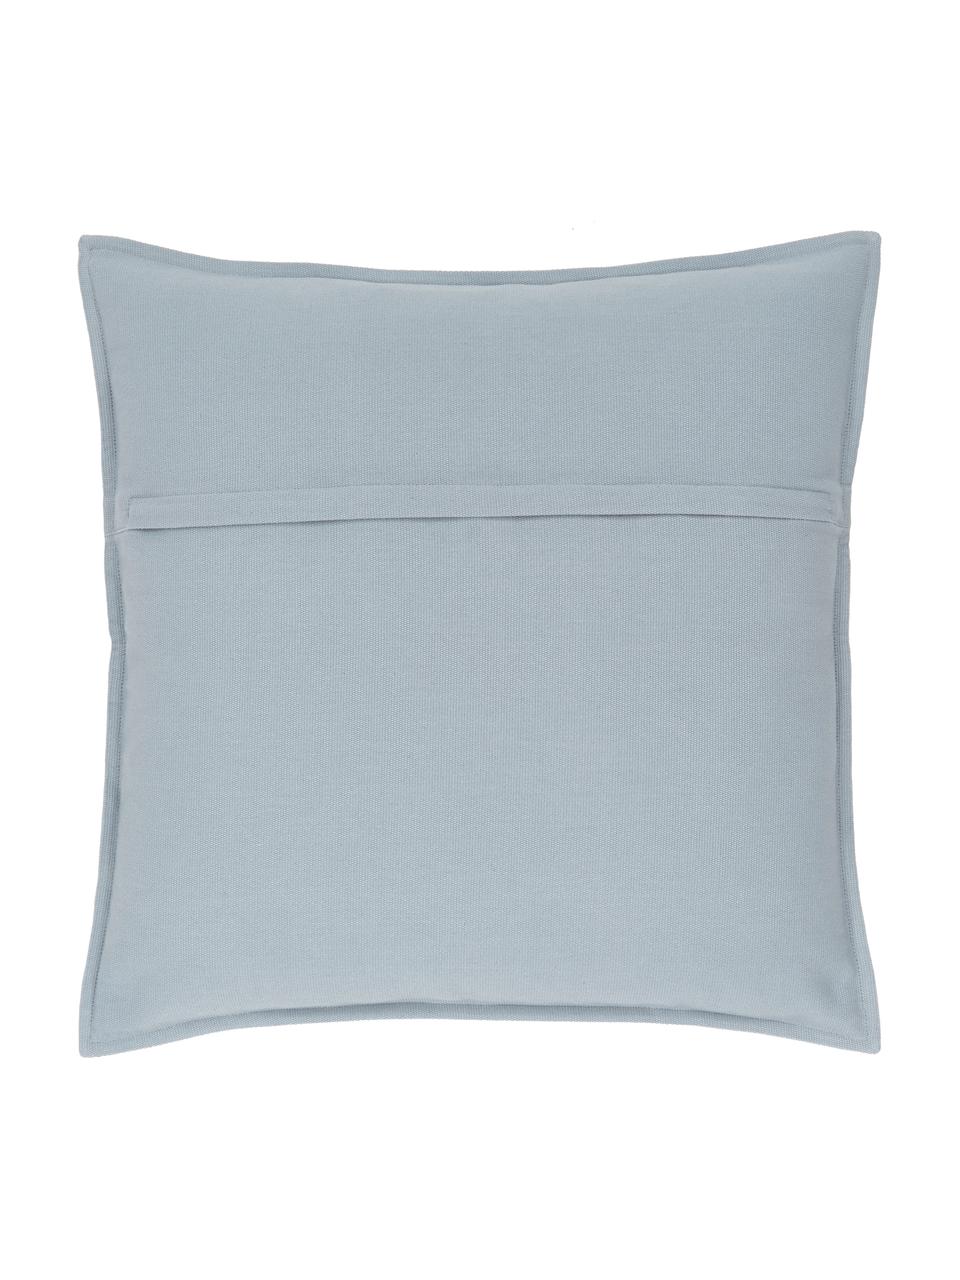 Poszewka na poduszkę z bawełny Mads, 100% bawełna, Niebieski, S 50 x D 50 cm